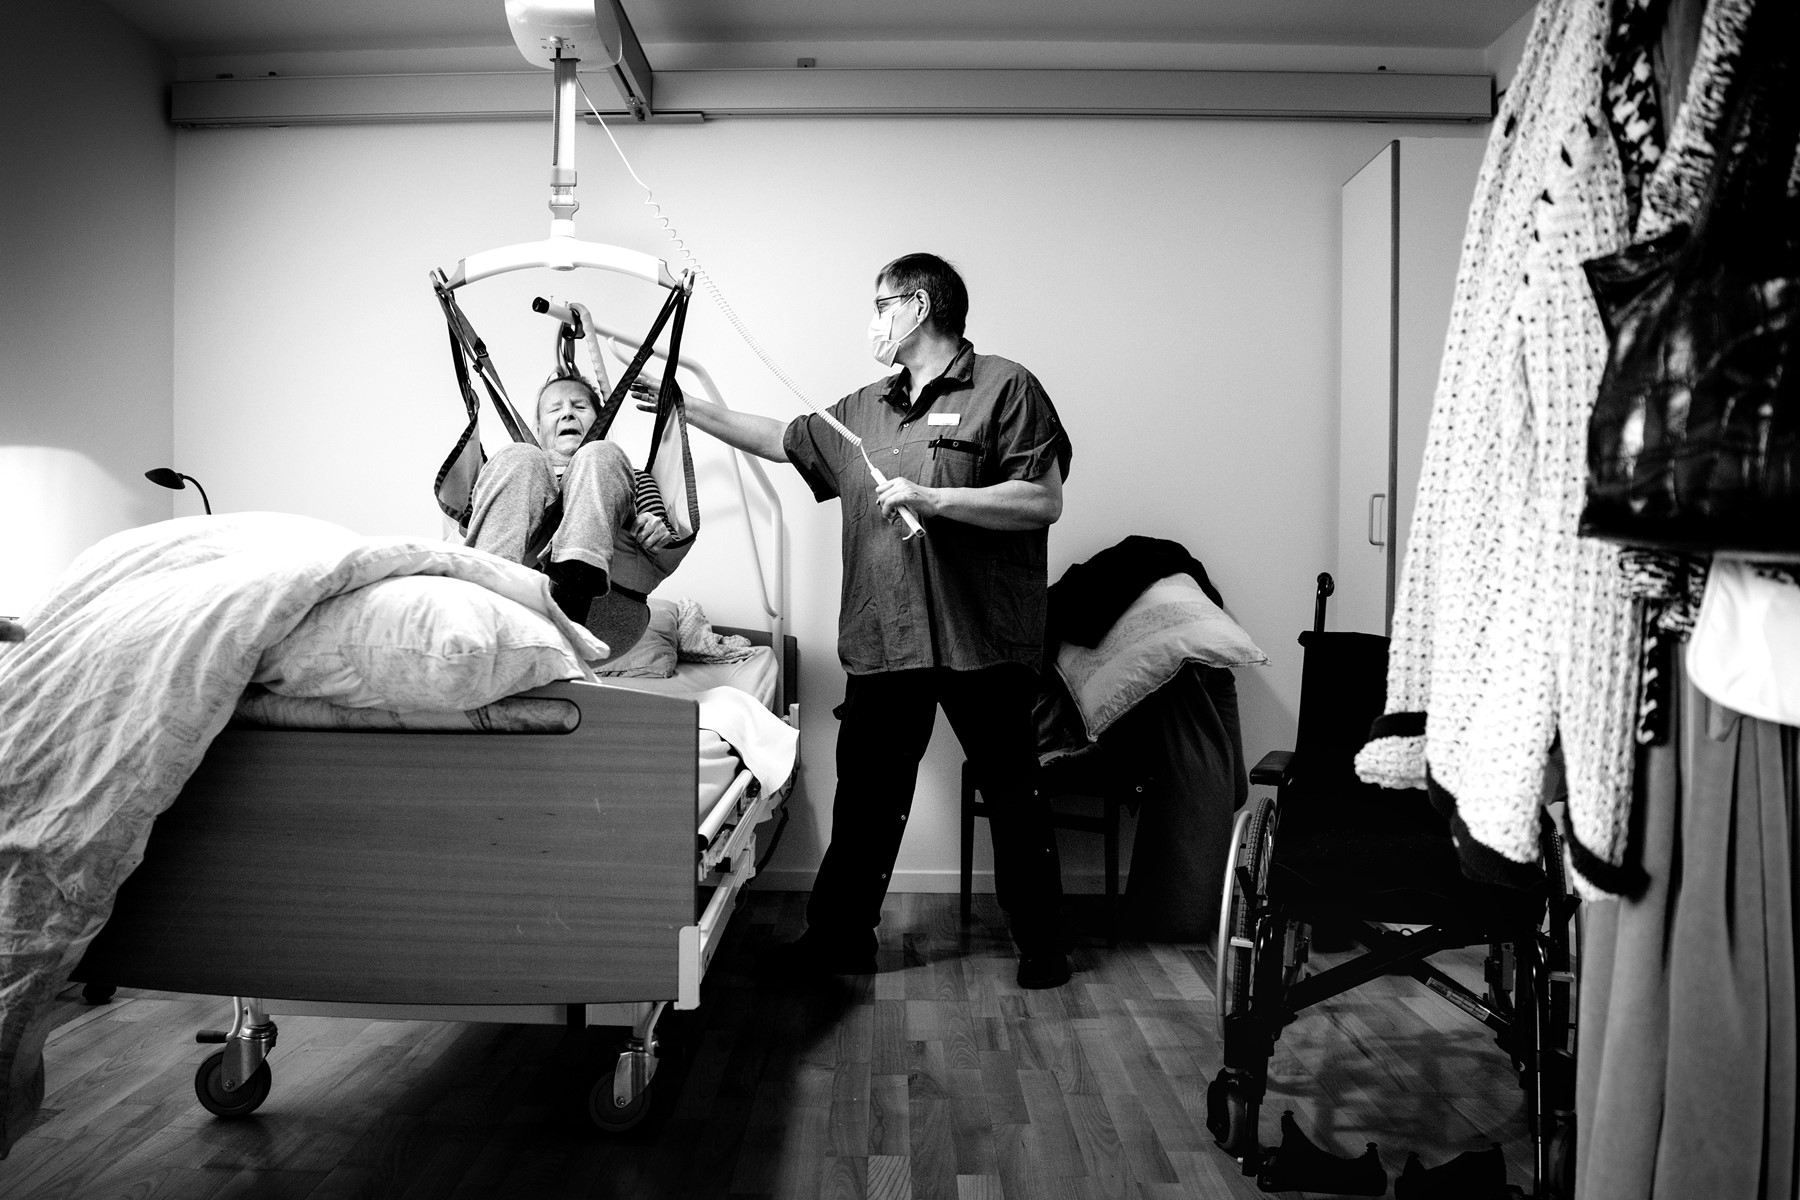 Susanne Sørensen gør Gerda klar til dagen: Hun bliver skiftet, vasket, får rent tøj på og håret bliver sat. Foto: Torben Hansen